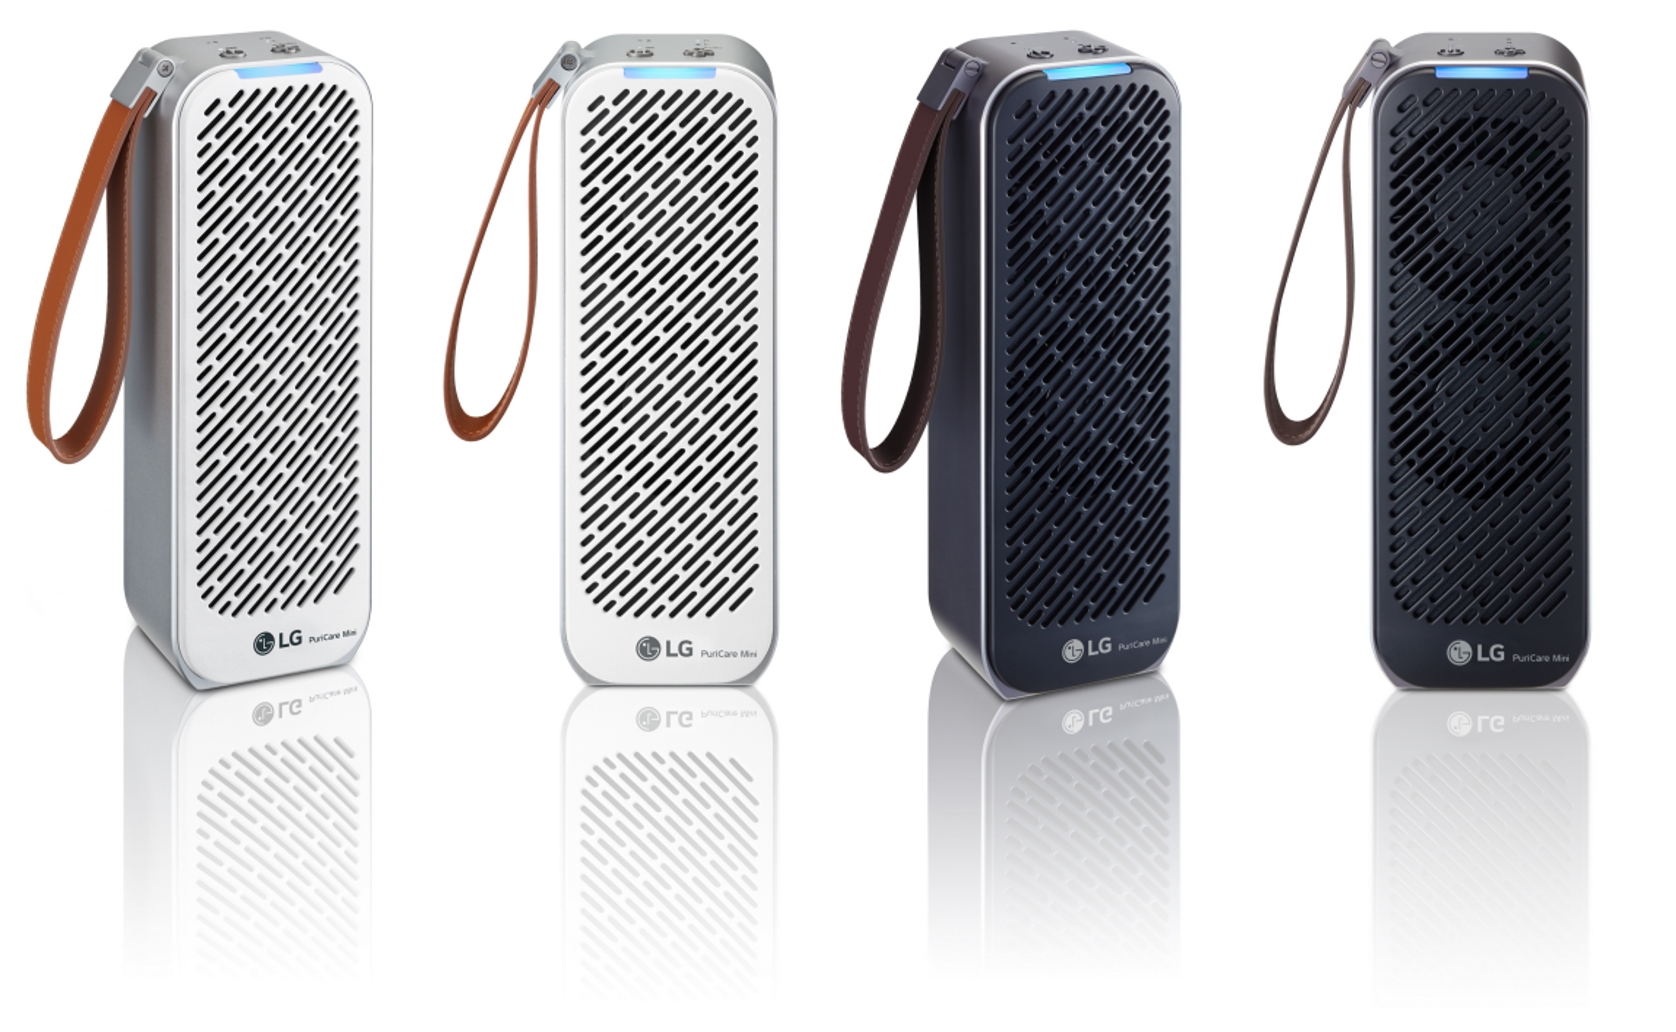 LG전자가 22일 휴대용 공기청정기 ‘LG 퓨리케어 미니 공기청정기’를 출시한다. 사진은 ‘LG 퓨리케어 미니 공기청정기’의 화이트, 블랙 색상 제품 사진